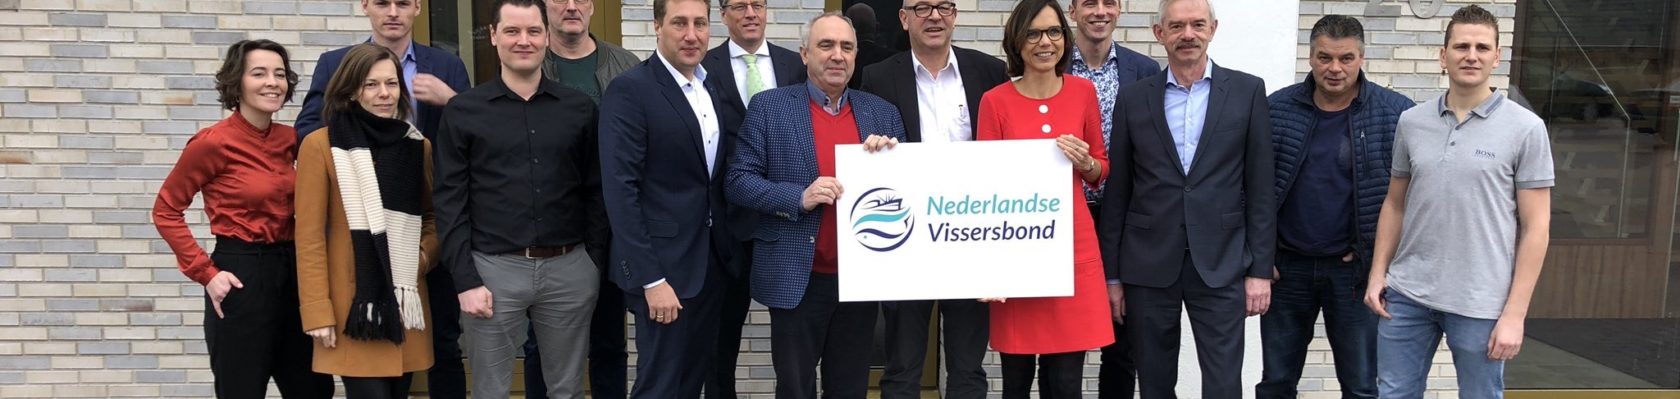 Bezoek ChristenUnie Nederlandse Vissersbond 2019